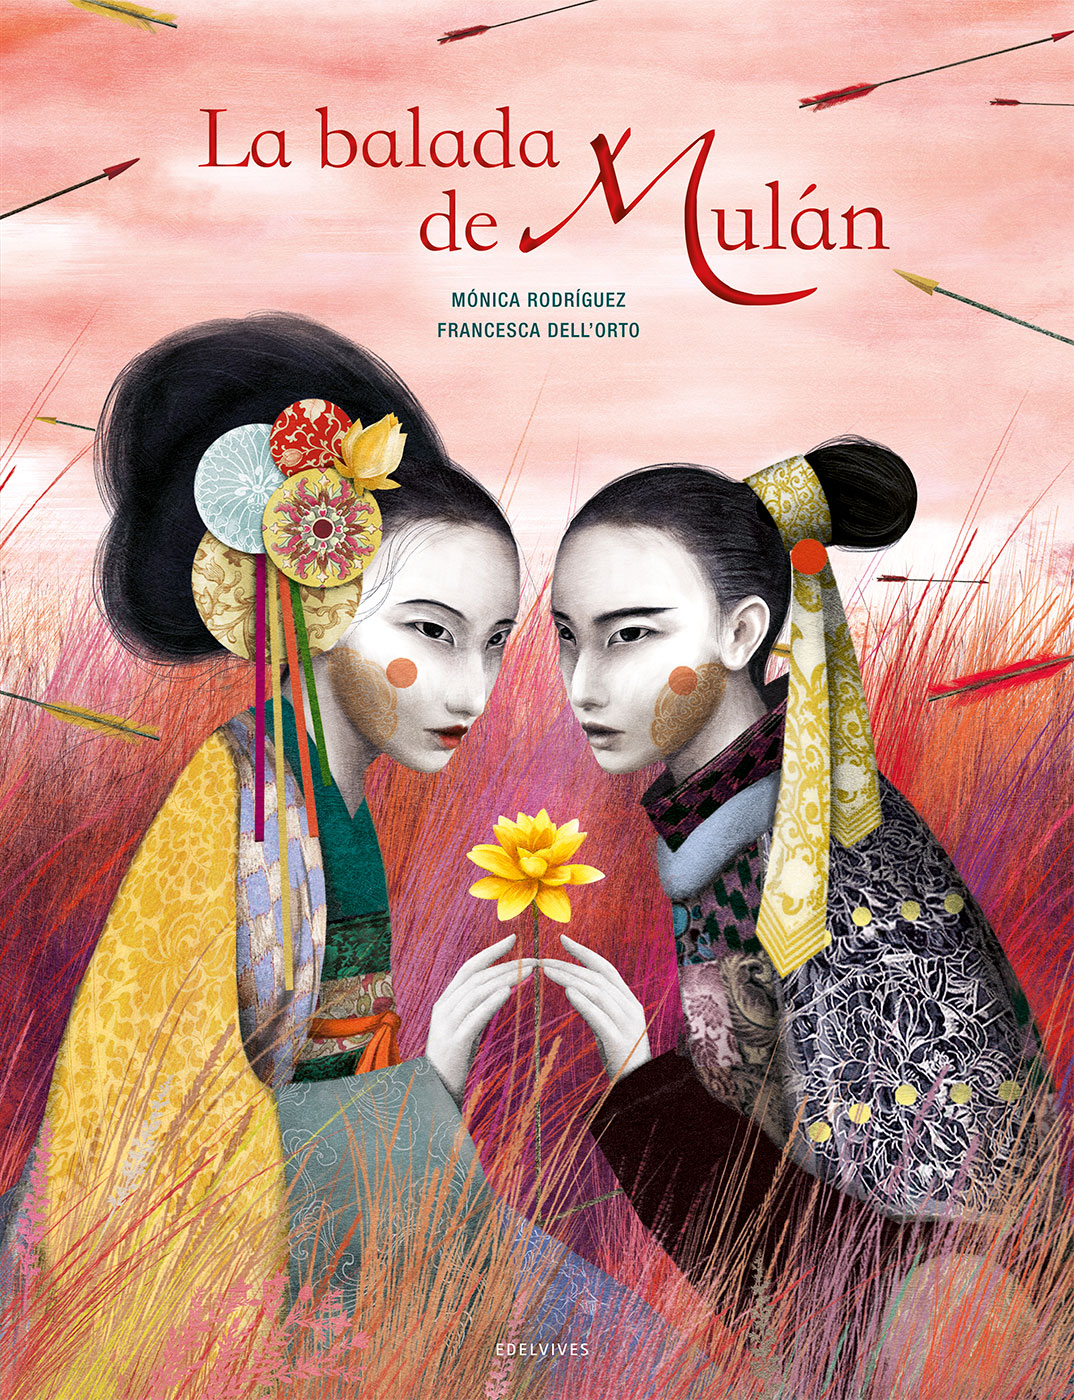 La balada de Mulan - Monica Rodriguez y Francesca dellOrto